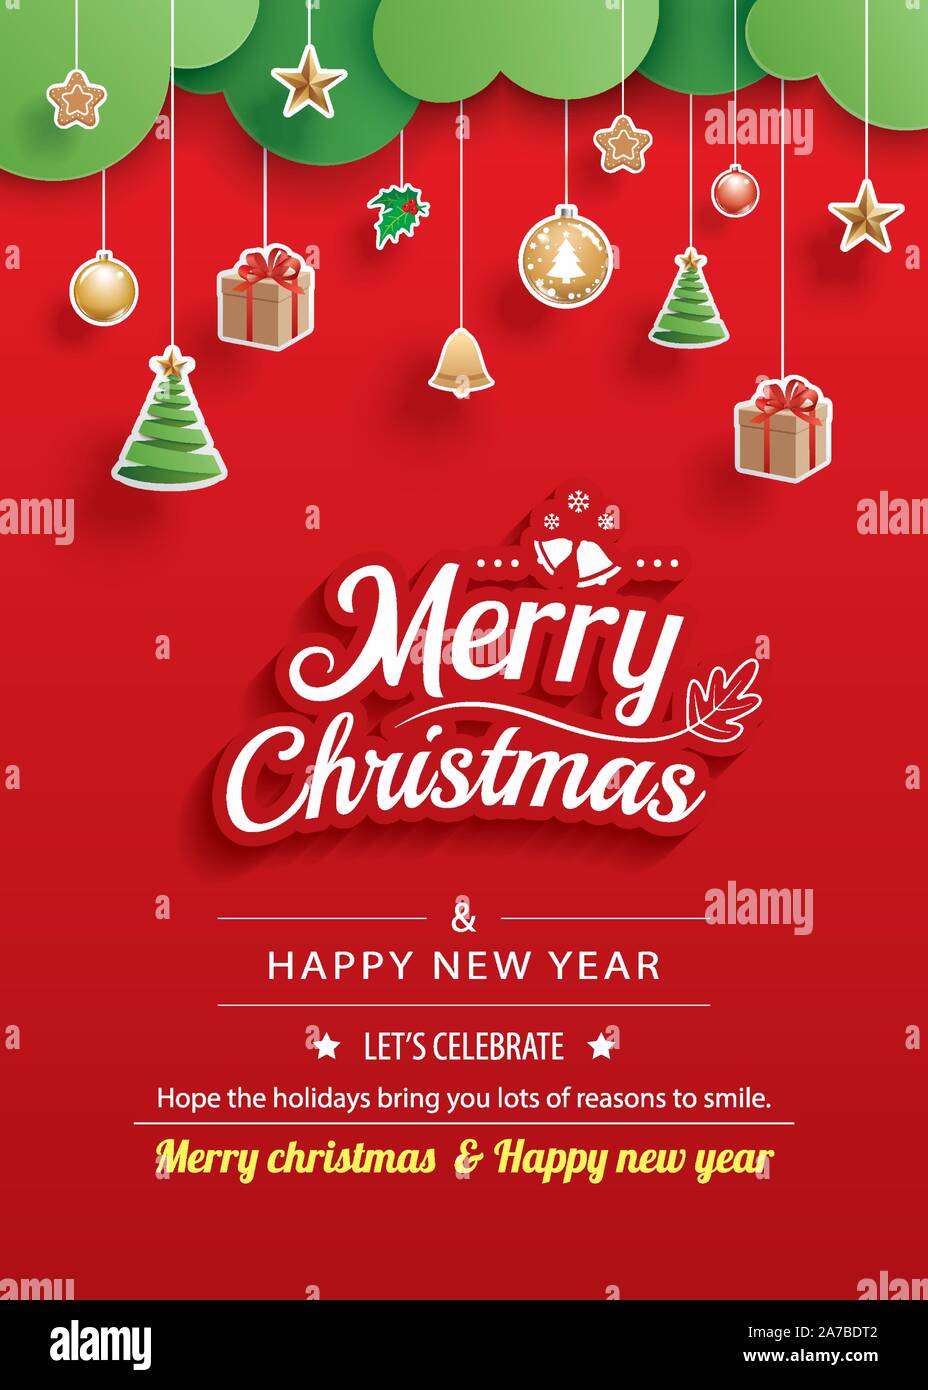 Frohe Weihnachten Und Guten Rutsch Ins Neue Jahr Grusskarten Banner Vorlage Verwenden Sie Fur Plakat Website Abdeckung Flyer Stock Vektorgrafik Alamy